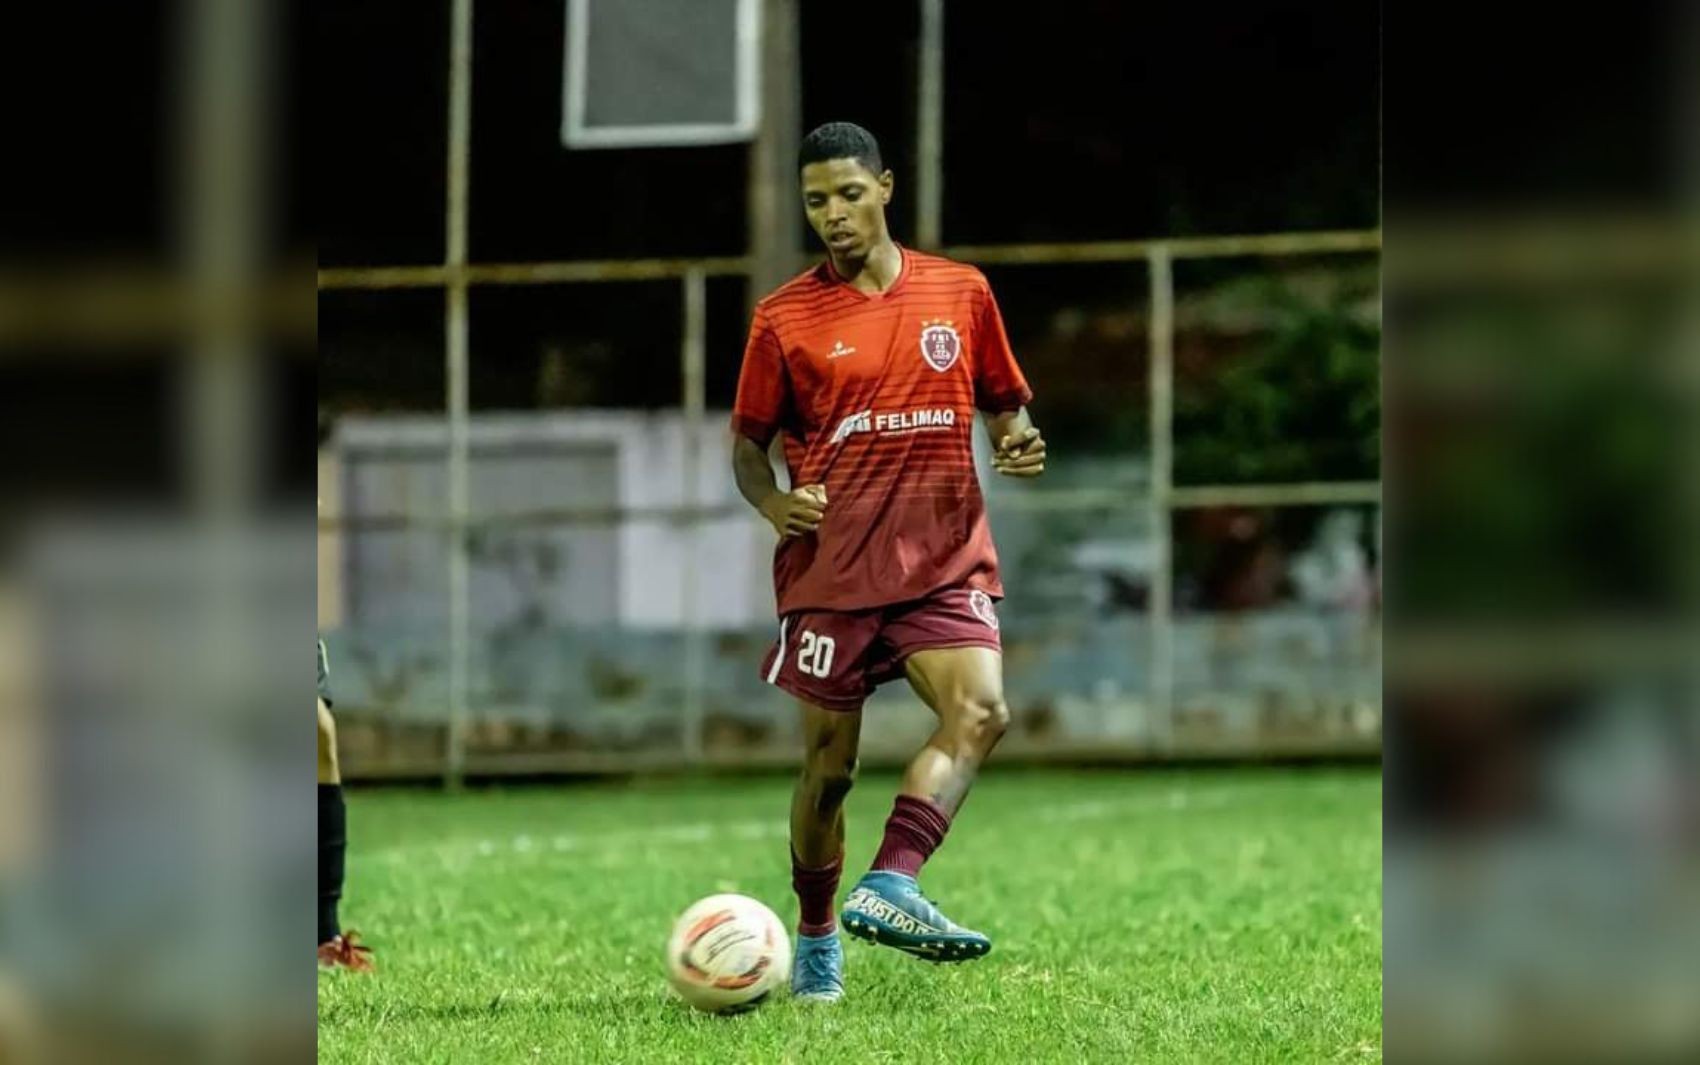 Jogador de futebol está desaparecido há mais de 20 dias após ir à festa em Goiás, diz família